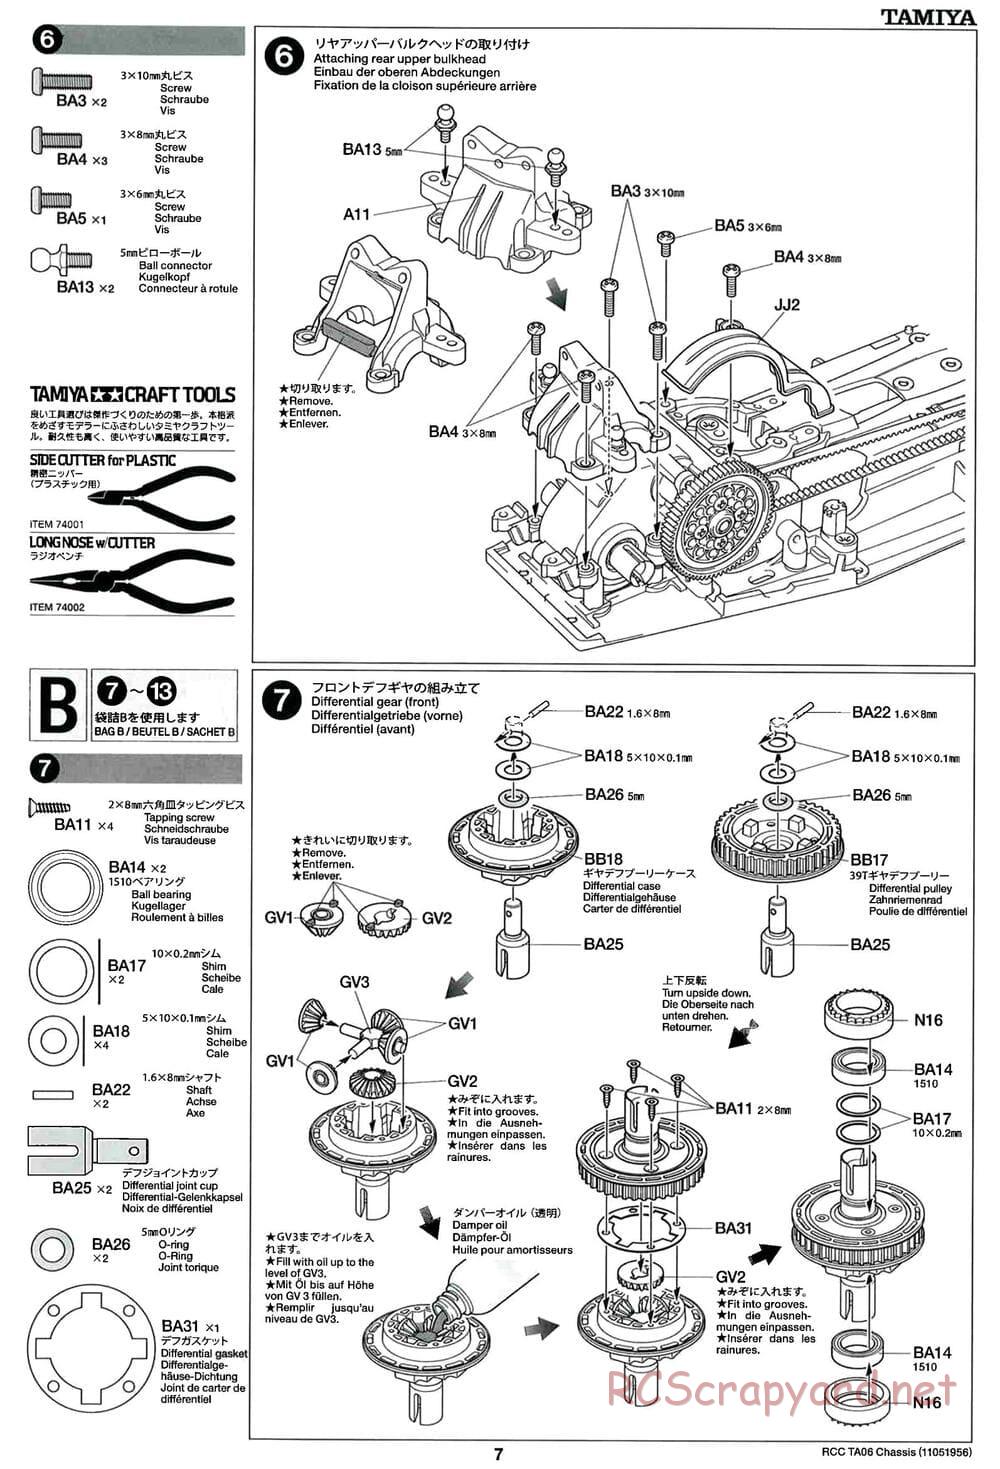 Tamiya - TA06 Chassis - Manual - Page 7